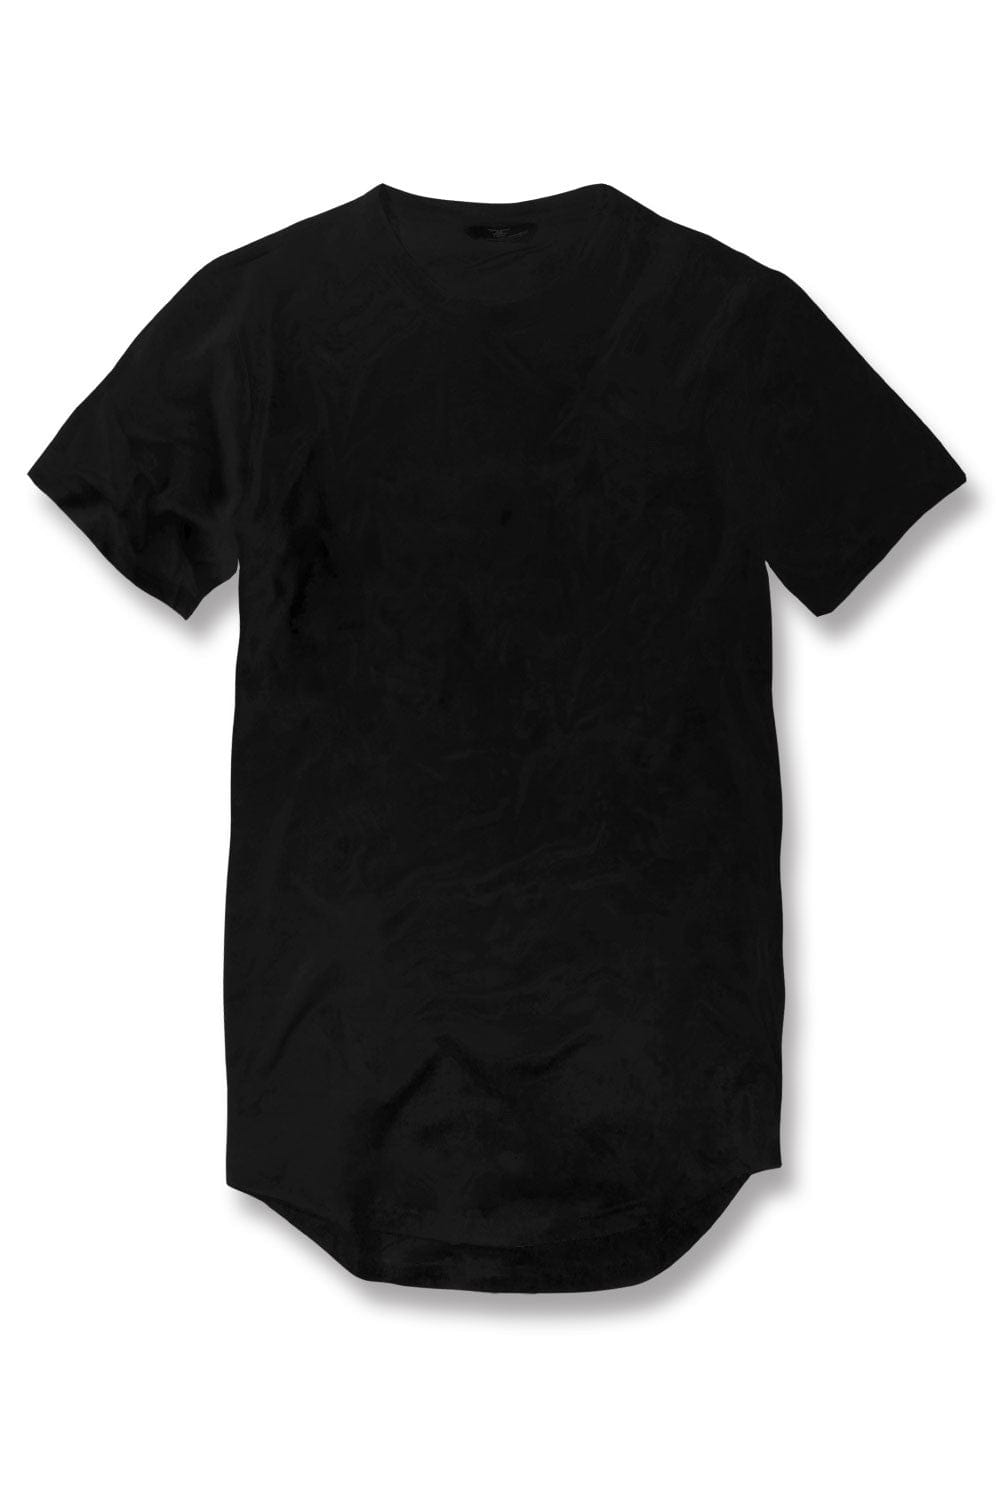 Jordan Craig Scallop T-Shirt Black / S